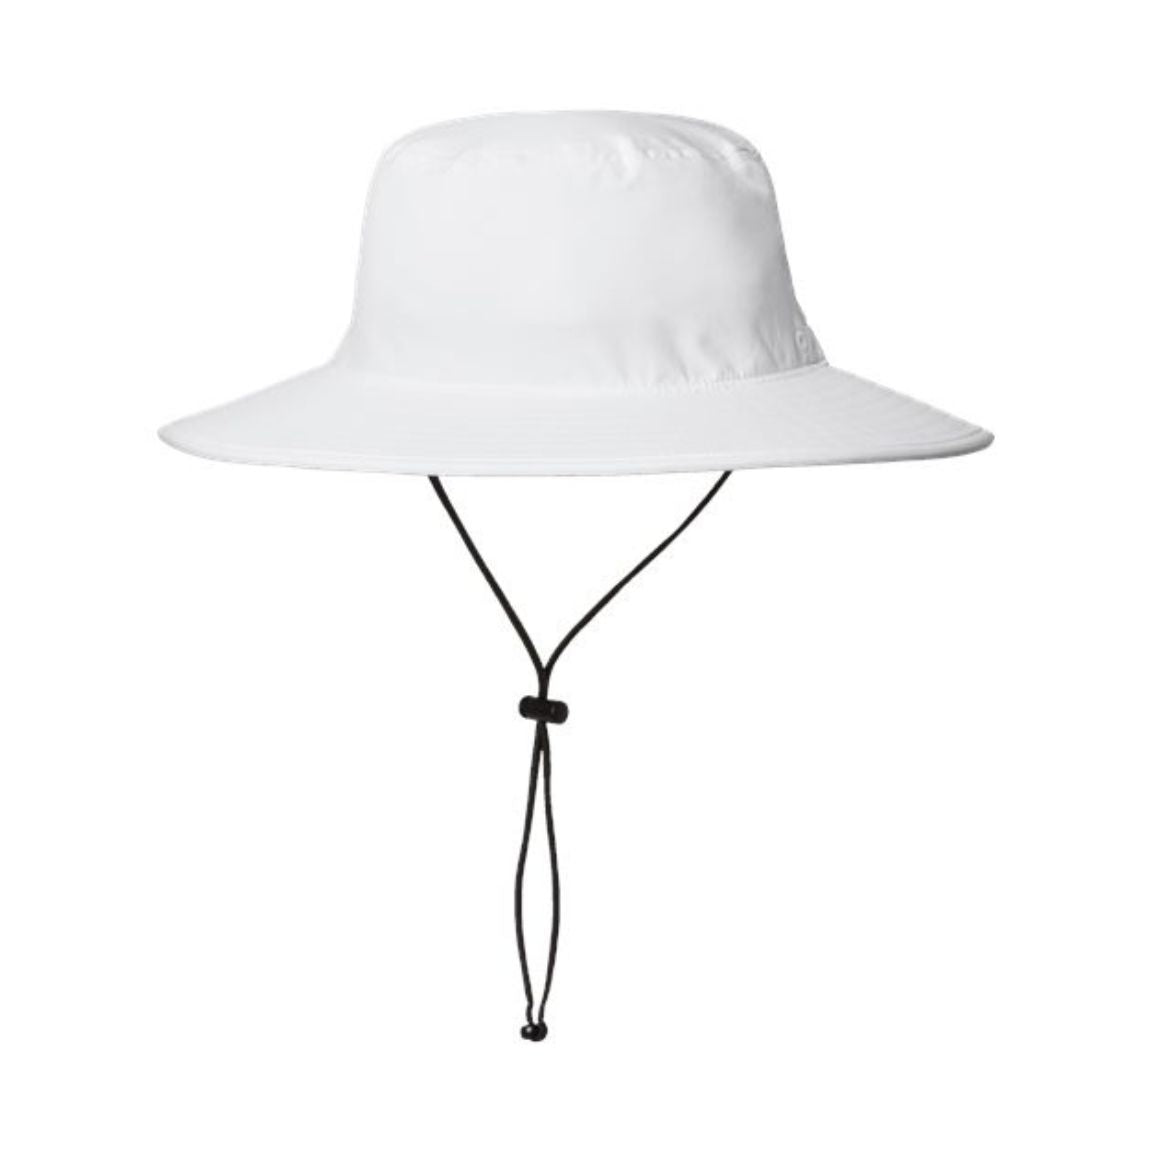 Adidas - Sustainable Sun Hat